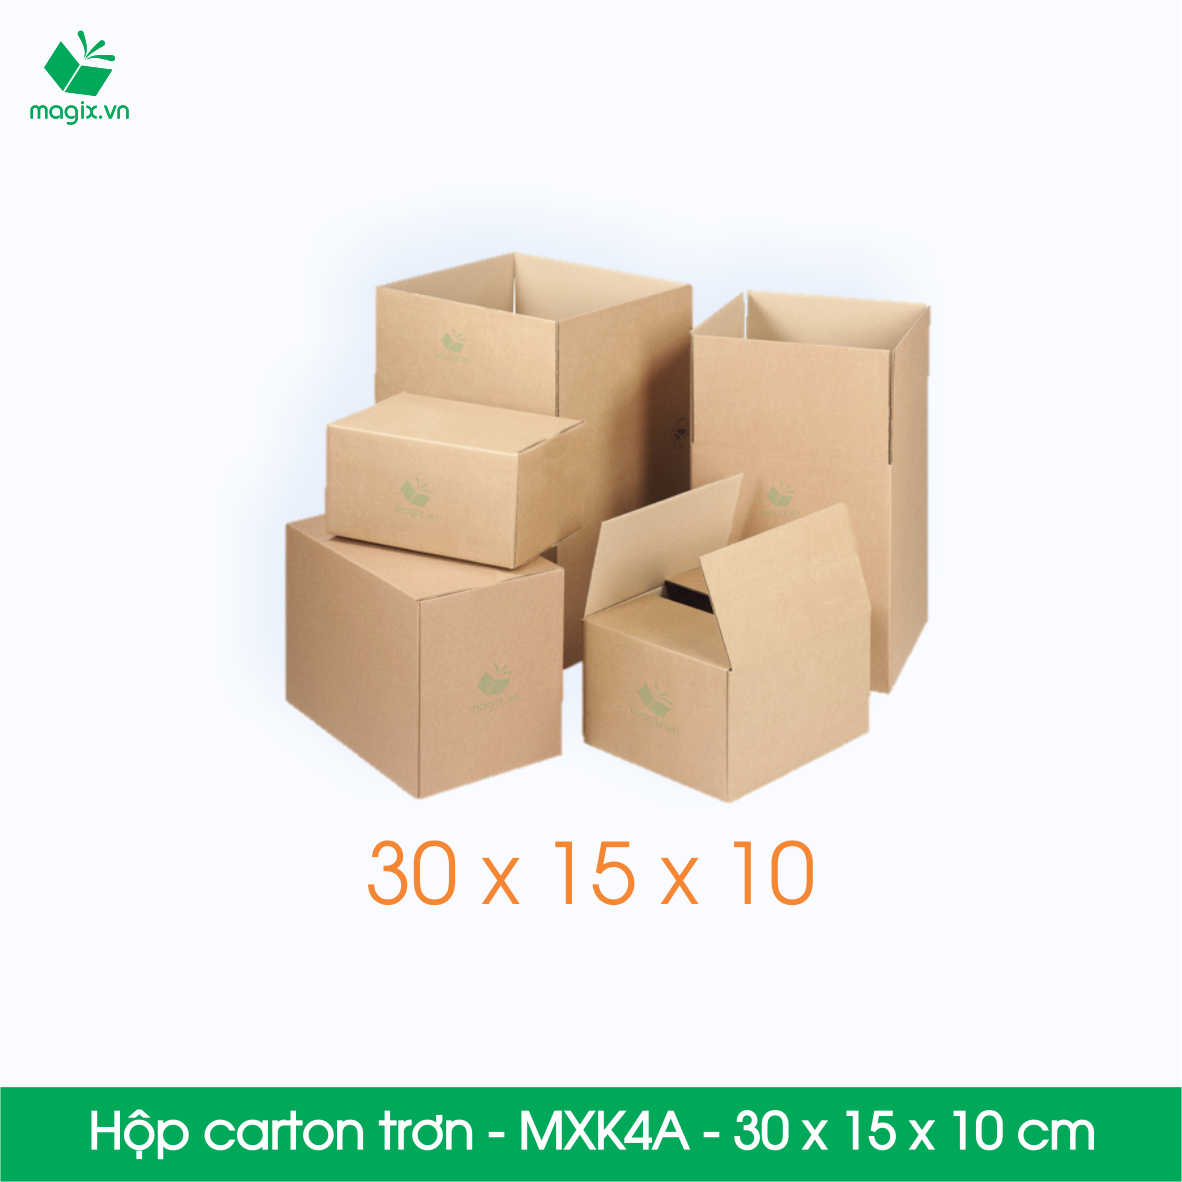 MXK4A - 30x15x10 cm - 60 Thùng hộp carton